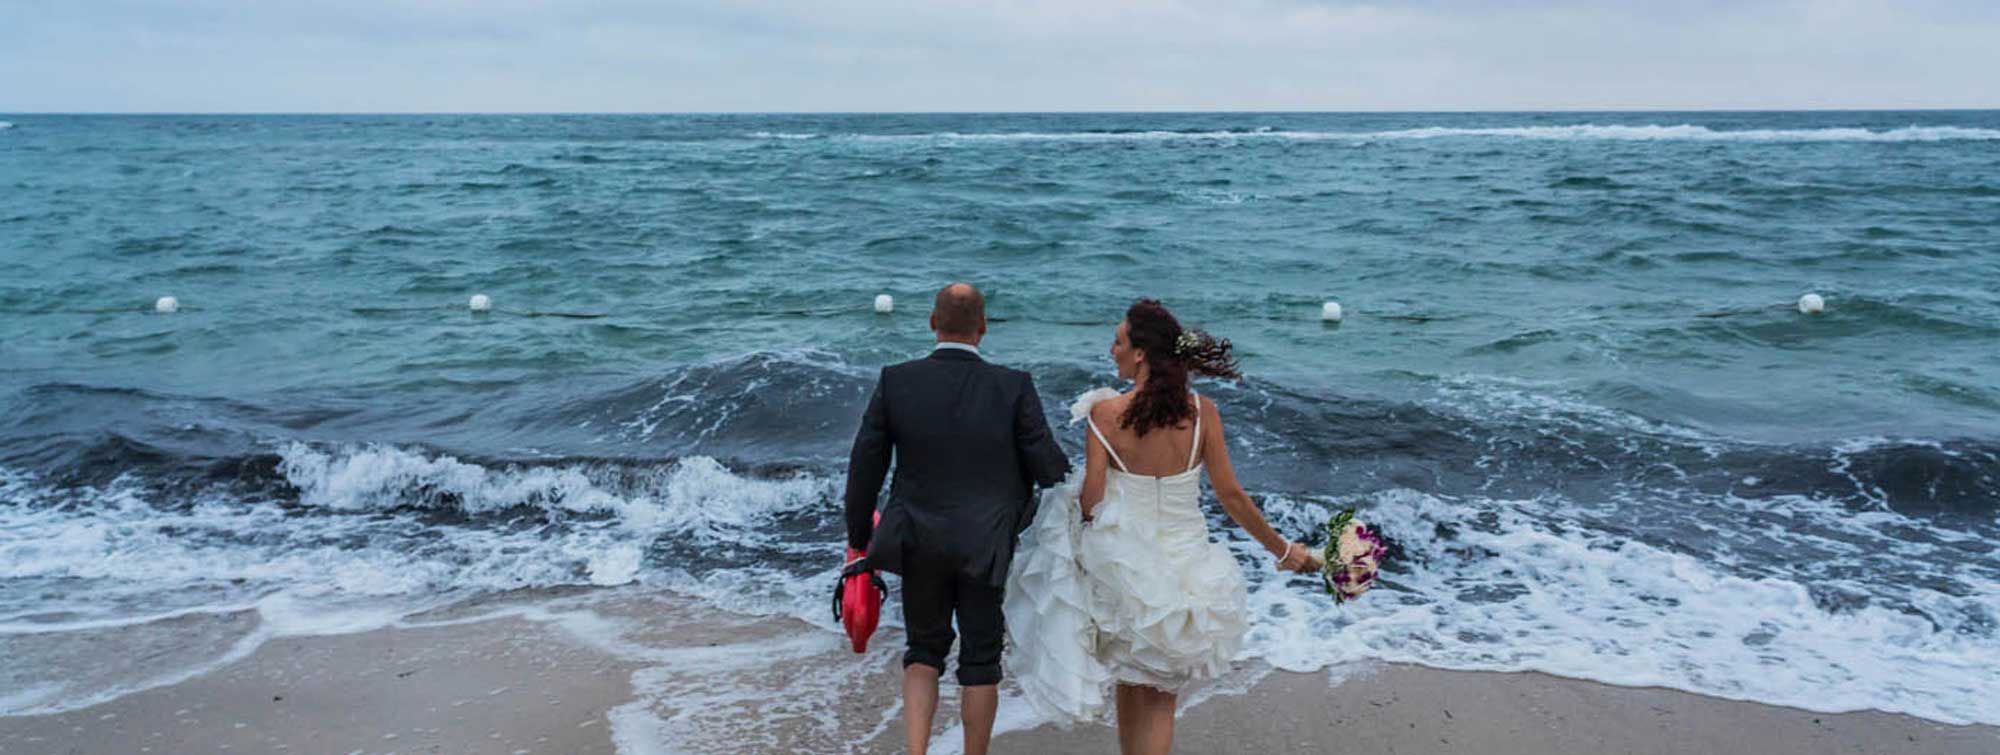 Hochzeitsfeeling am Meer